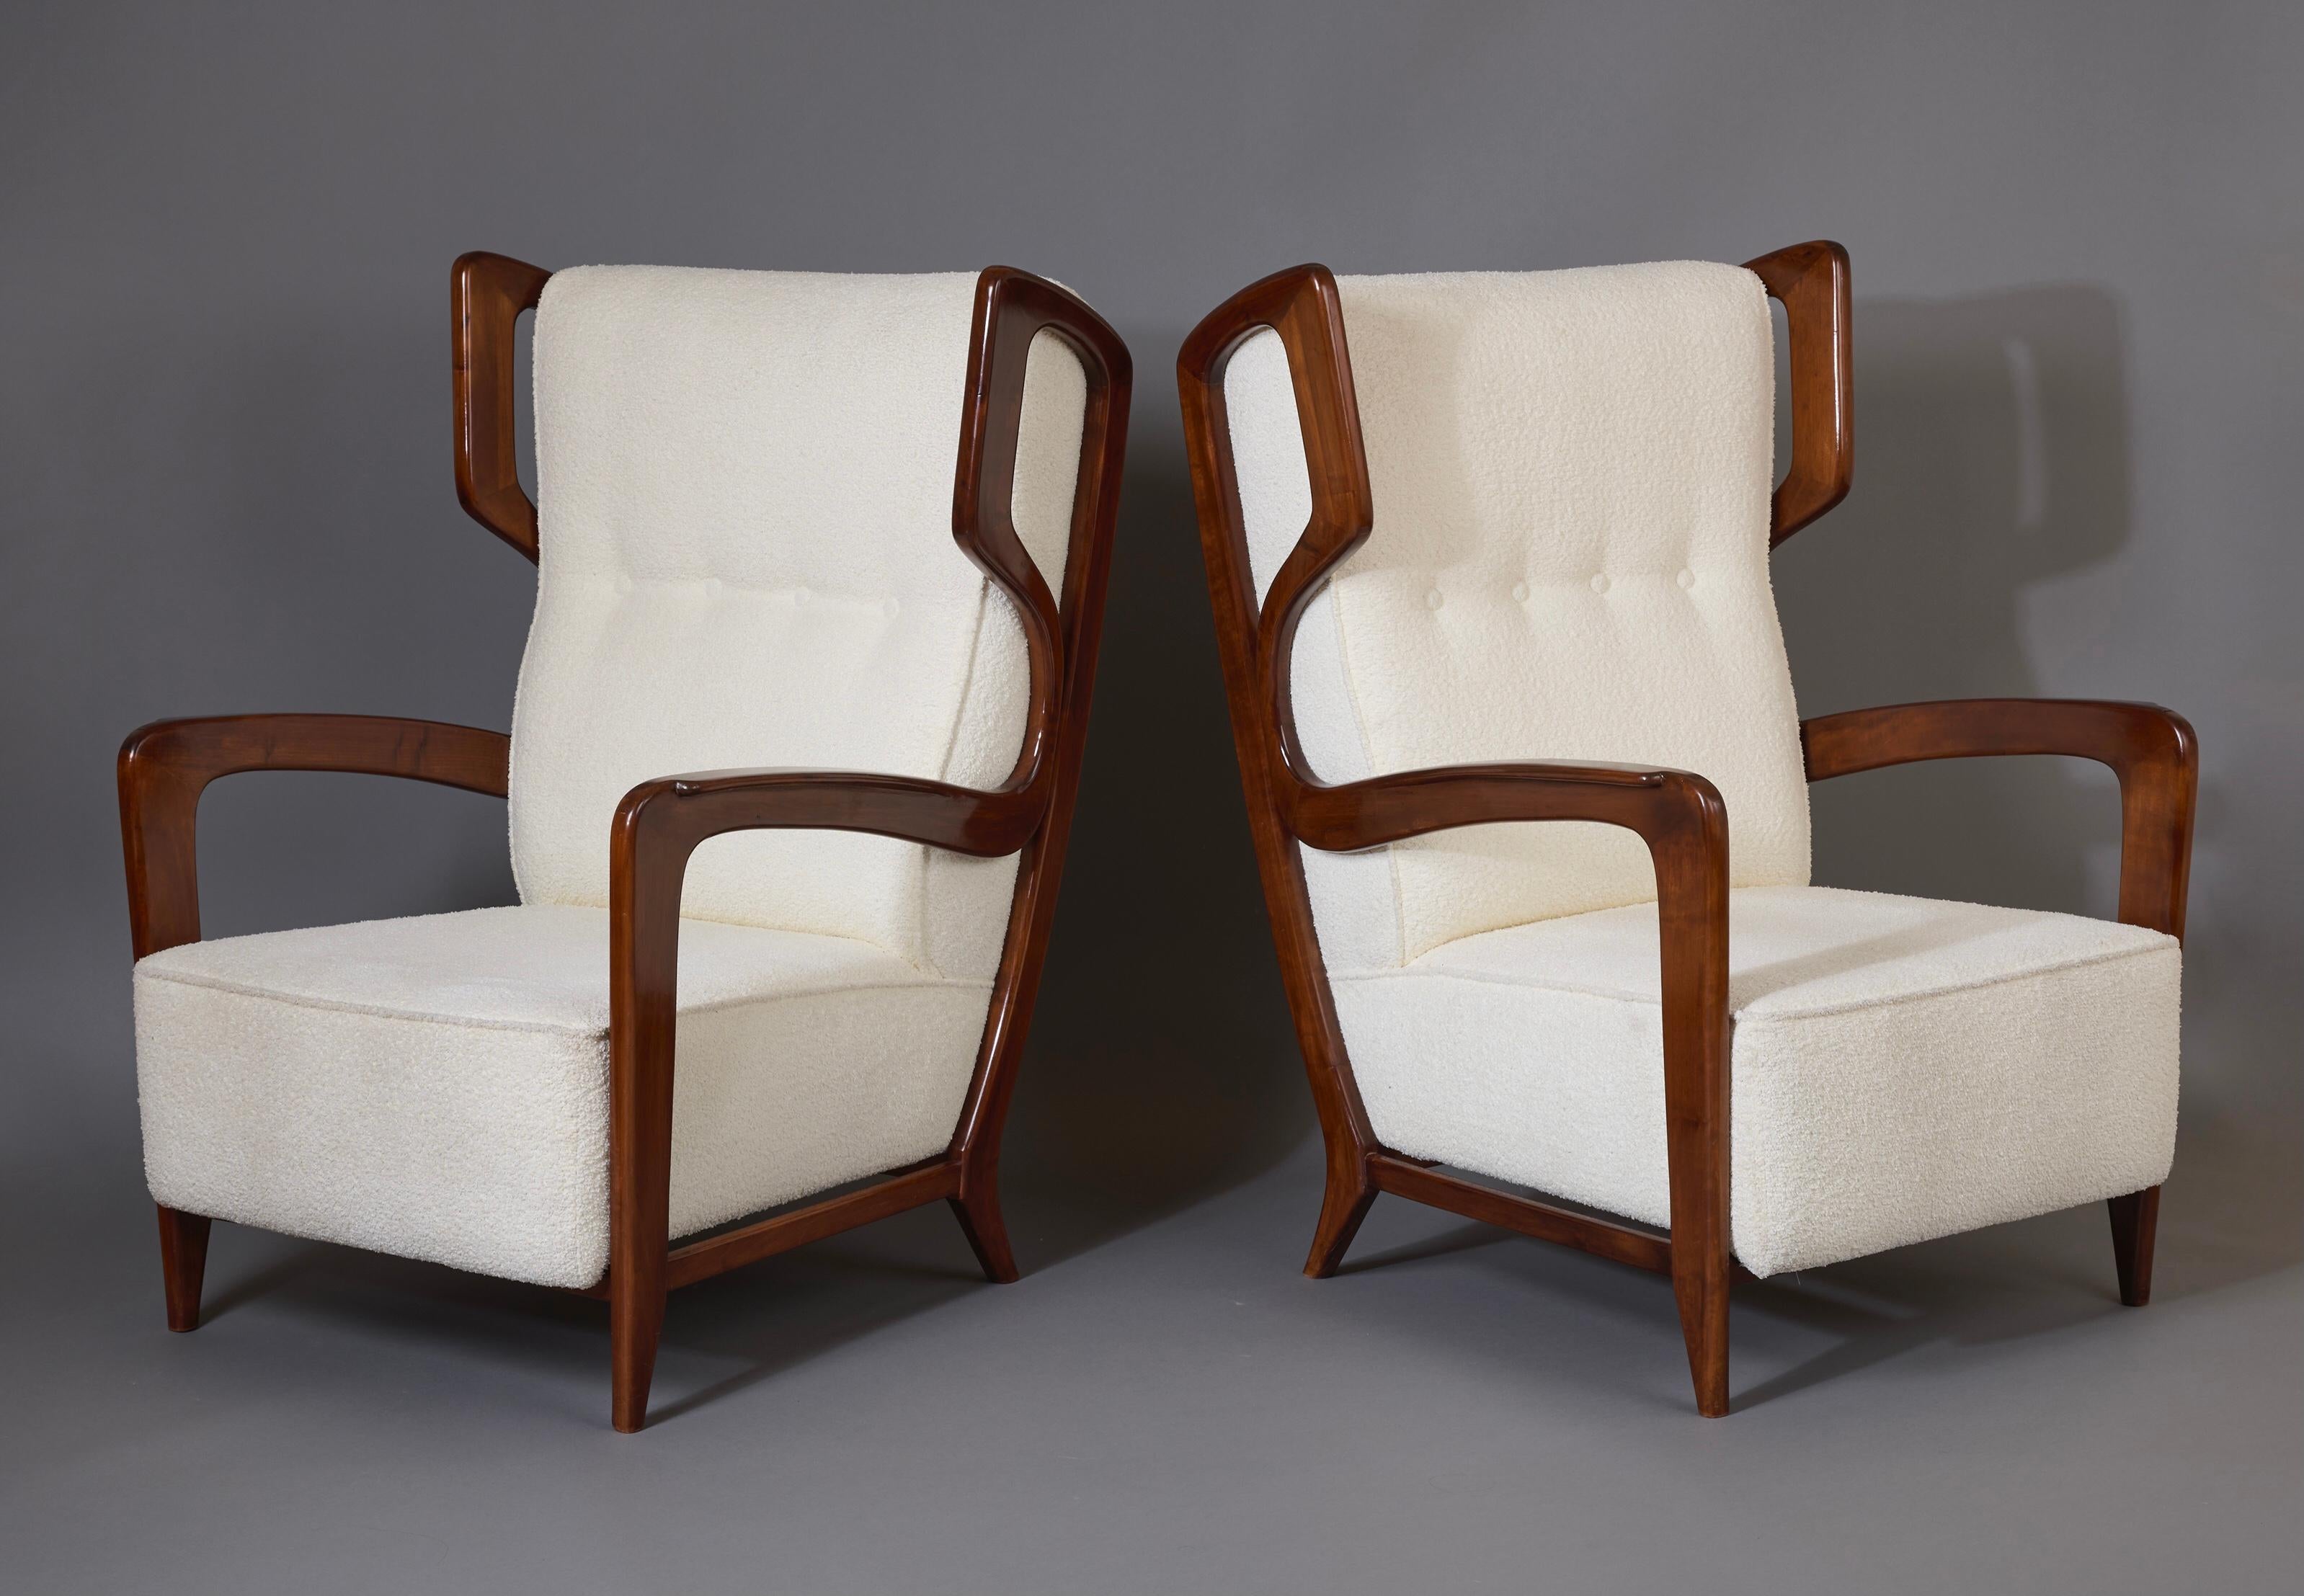 Gio Ponti (1891 - 1979)

Ein seltenes und außergewöhnliches Paar Ohrensessel des Meisters der Moderne, Gio Ponti, aus poliertem Nussbaum mit weißem Bouclé-Bezug. Die markante, fadenförmige Armatur der Stühle - ein durchgehendes Band, das von den